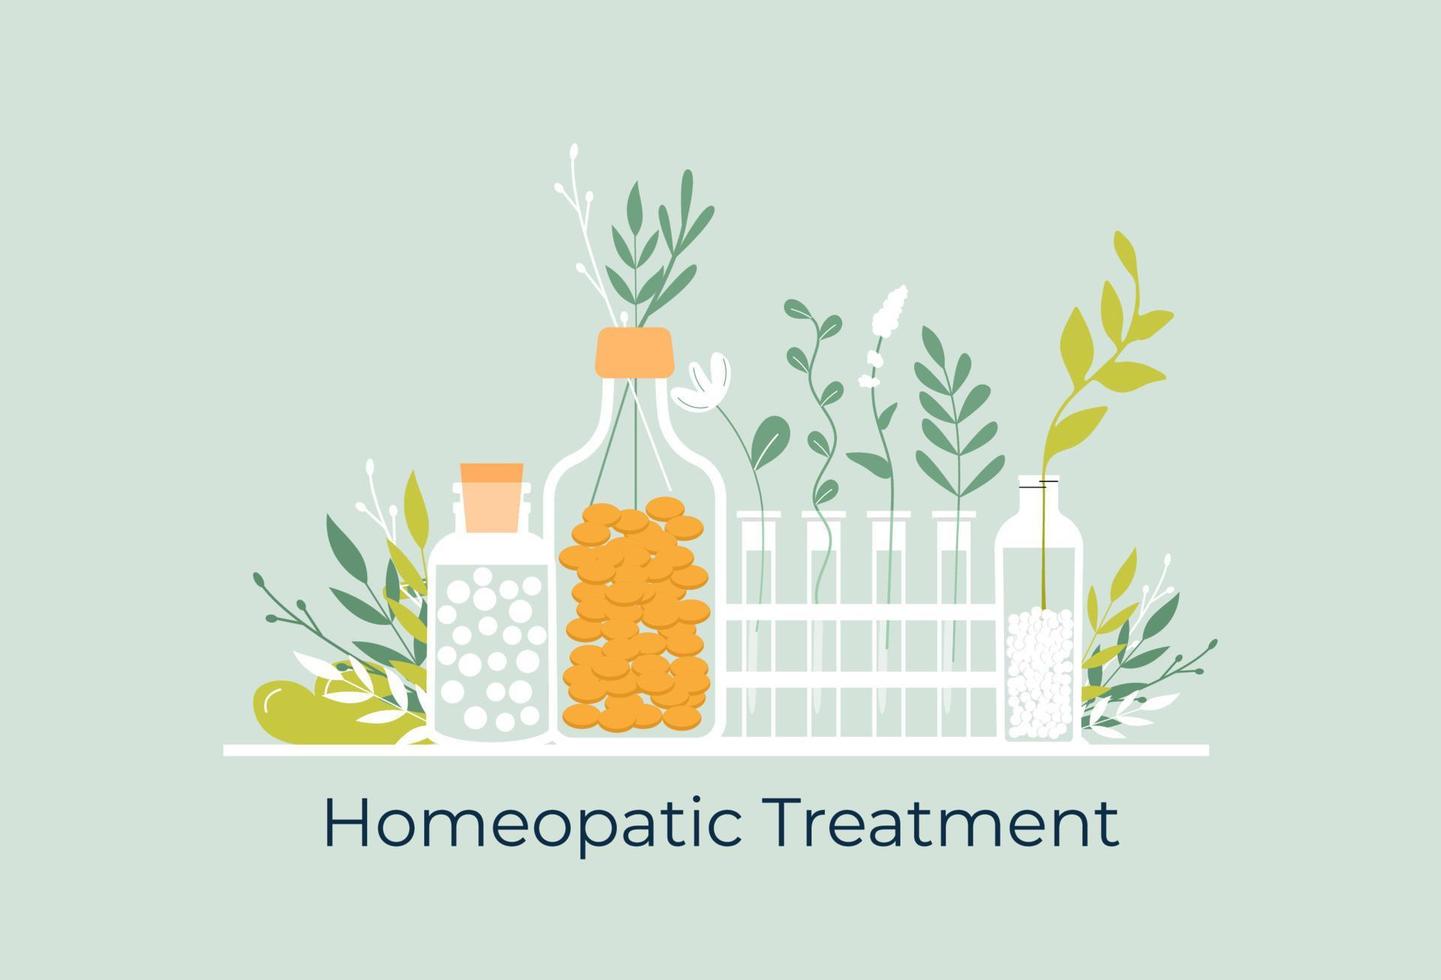 groene biologische natuurlijke homeopathische pillen in glazen potten. homeopathie behandeling kruiden alternatieve geneeskunde, essentiële natuurlijke olie, kruidenapotheek, voedingssupplement. platte vector